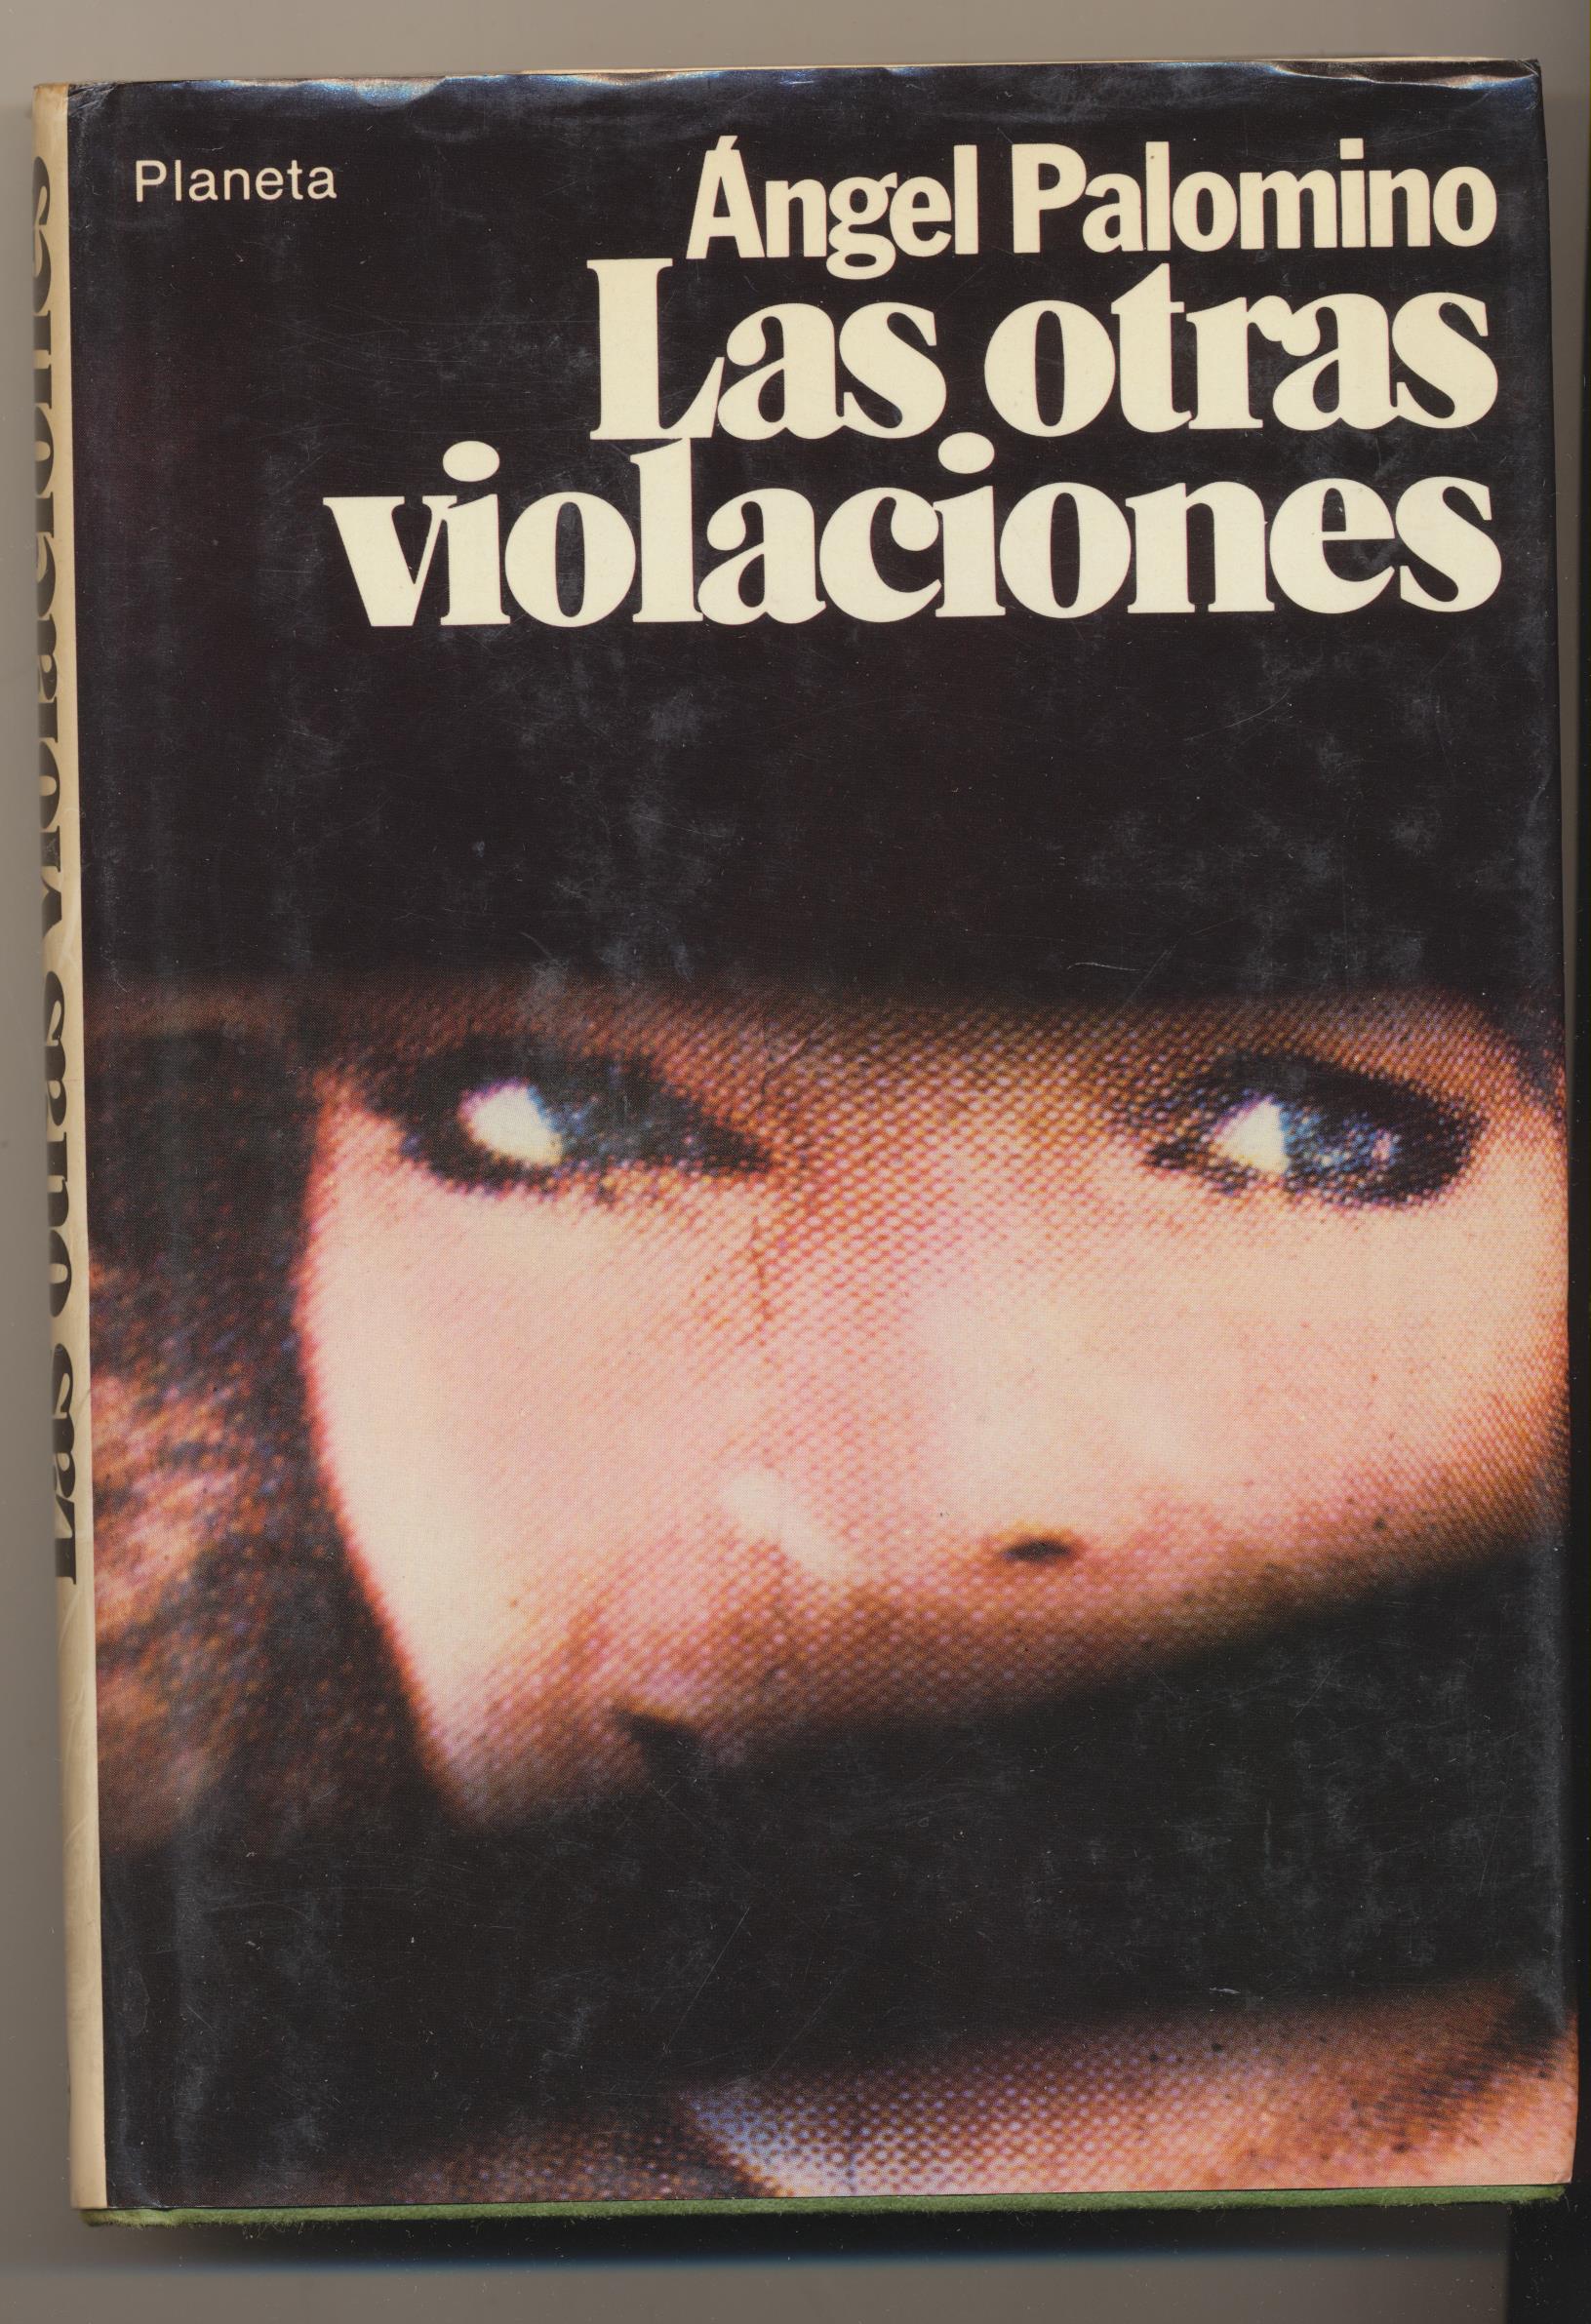 Ángel Palomino. Las Otras violaciones. 1ª Edición planeta 1979